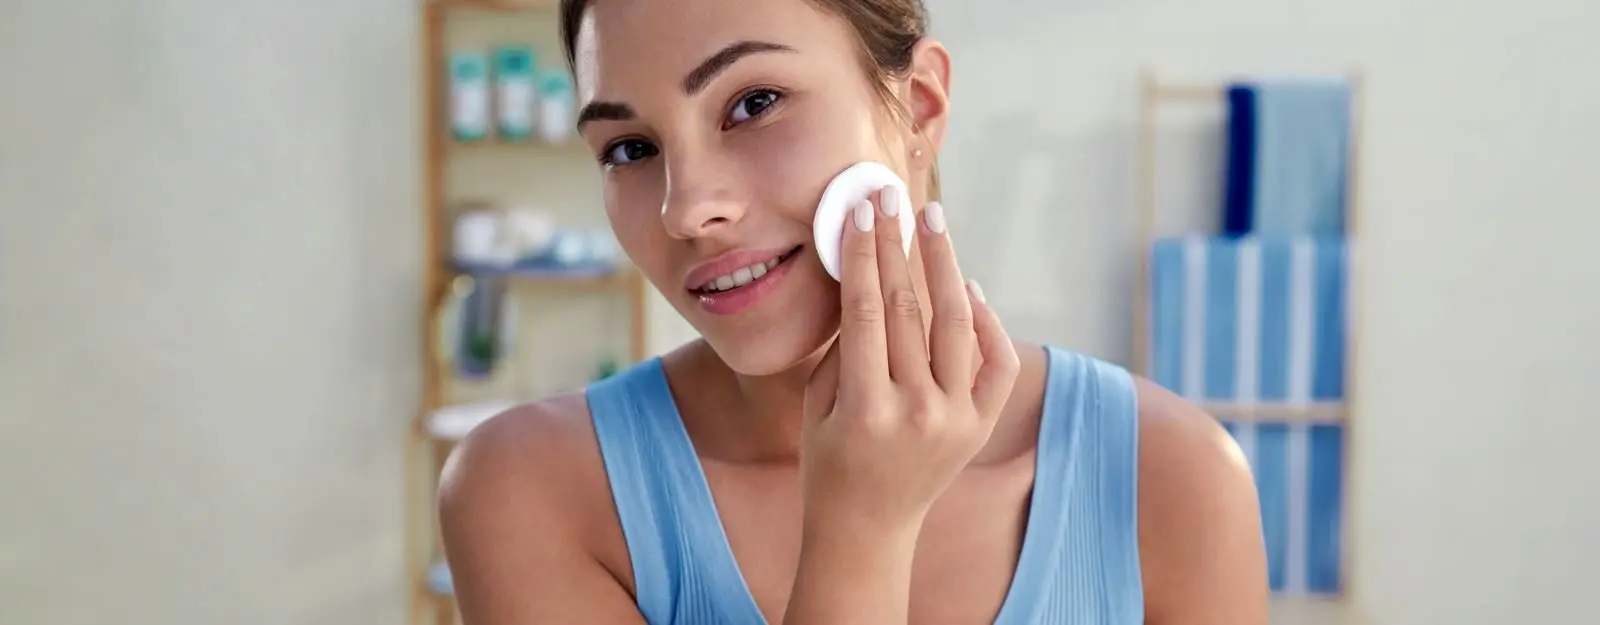 Skin Care For Oily Skin | Oily Skin Advice | NIVEA